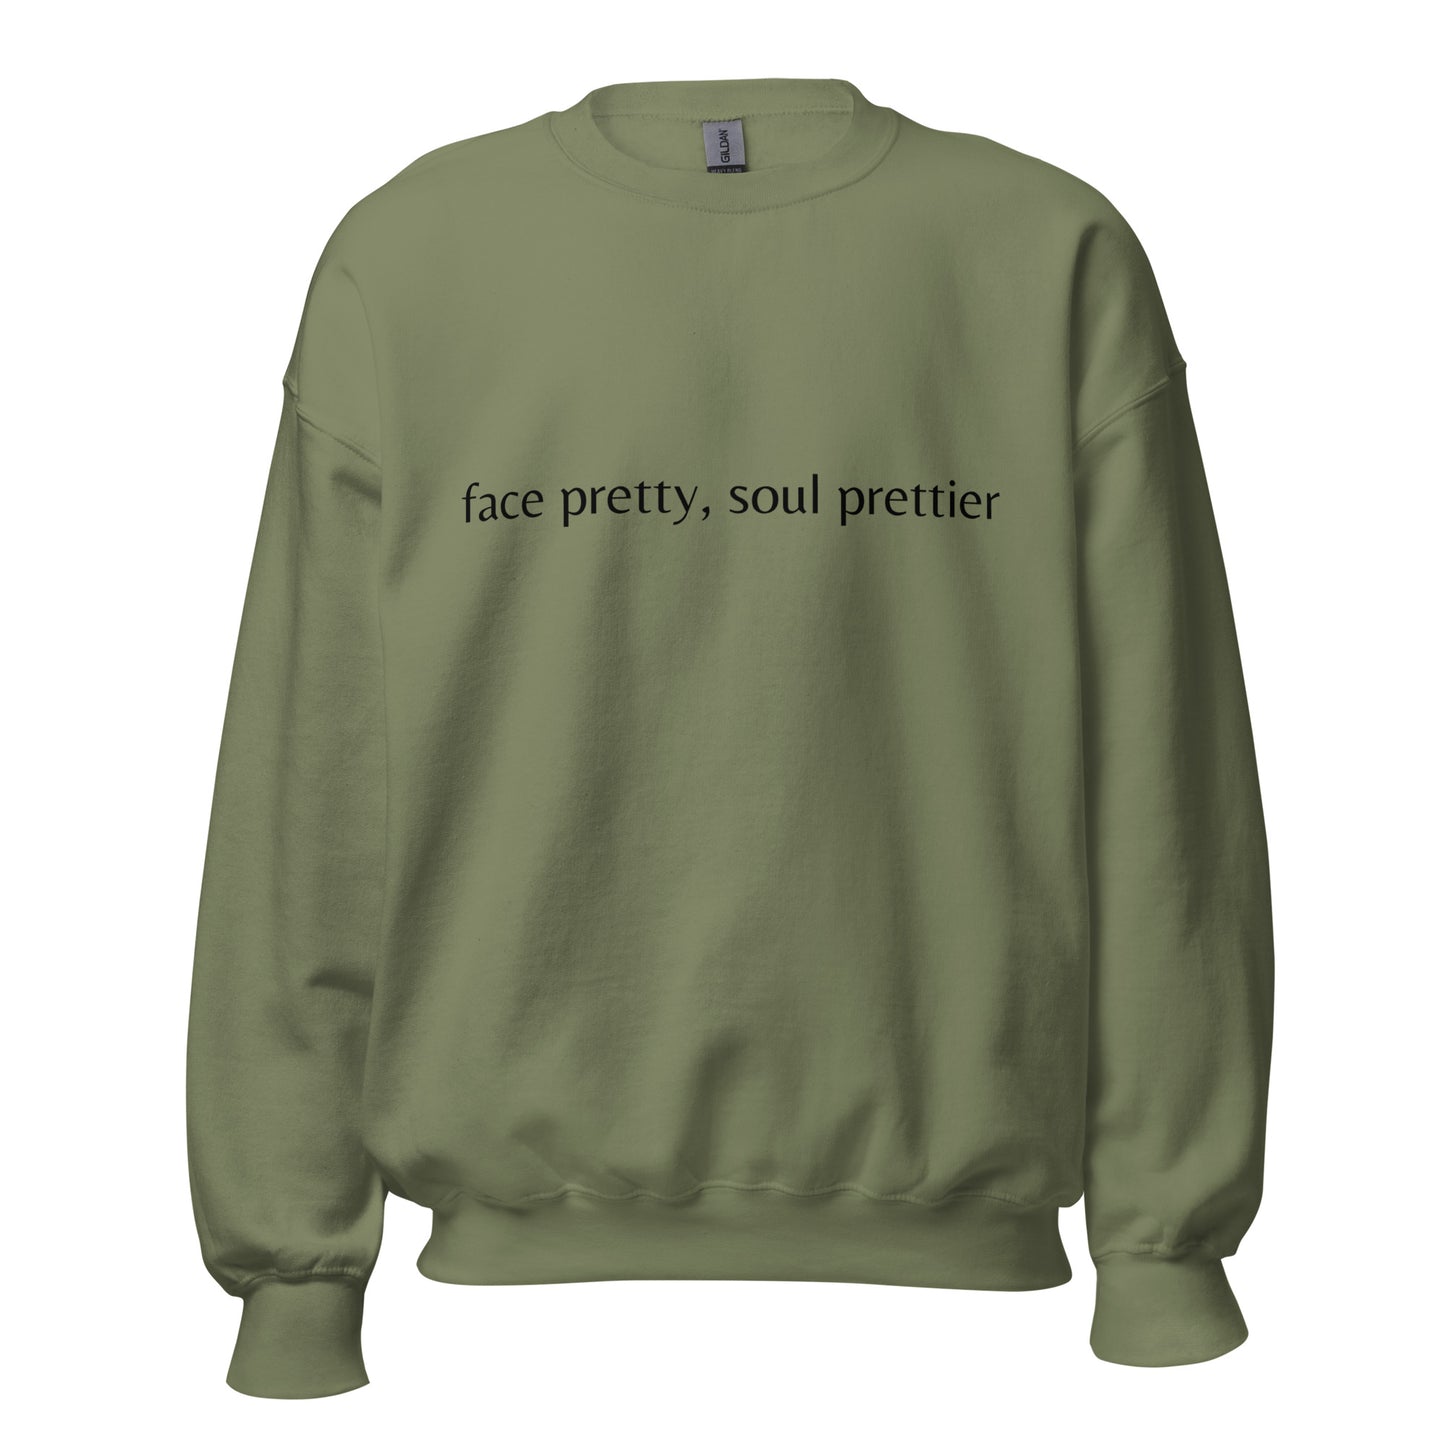 Prettier soul- Sweatshirt